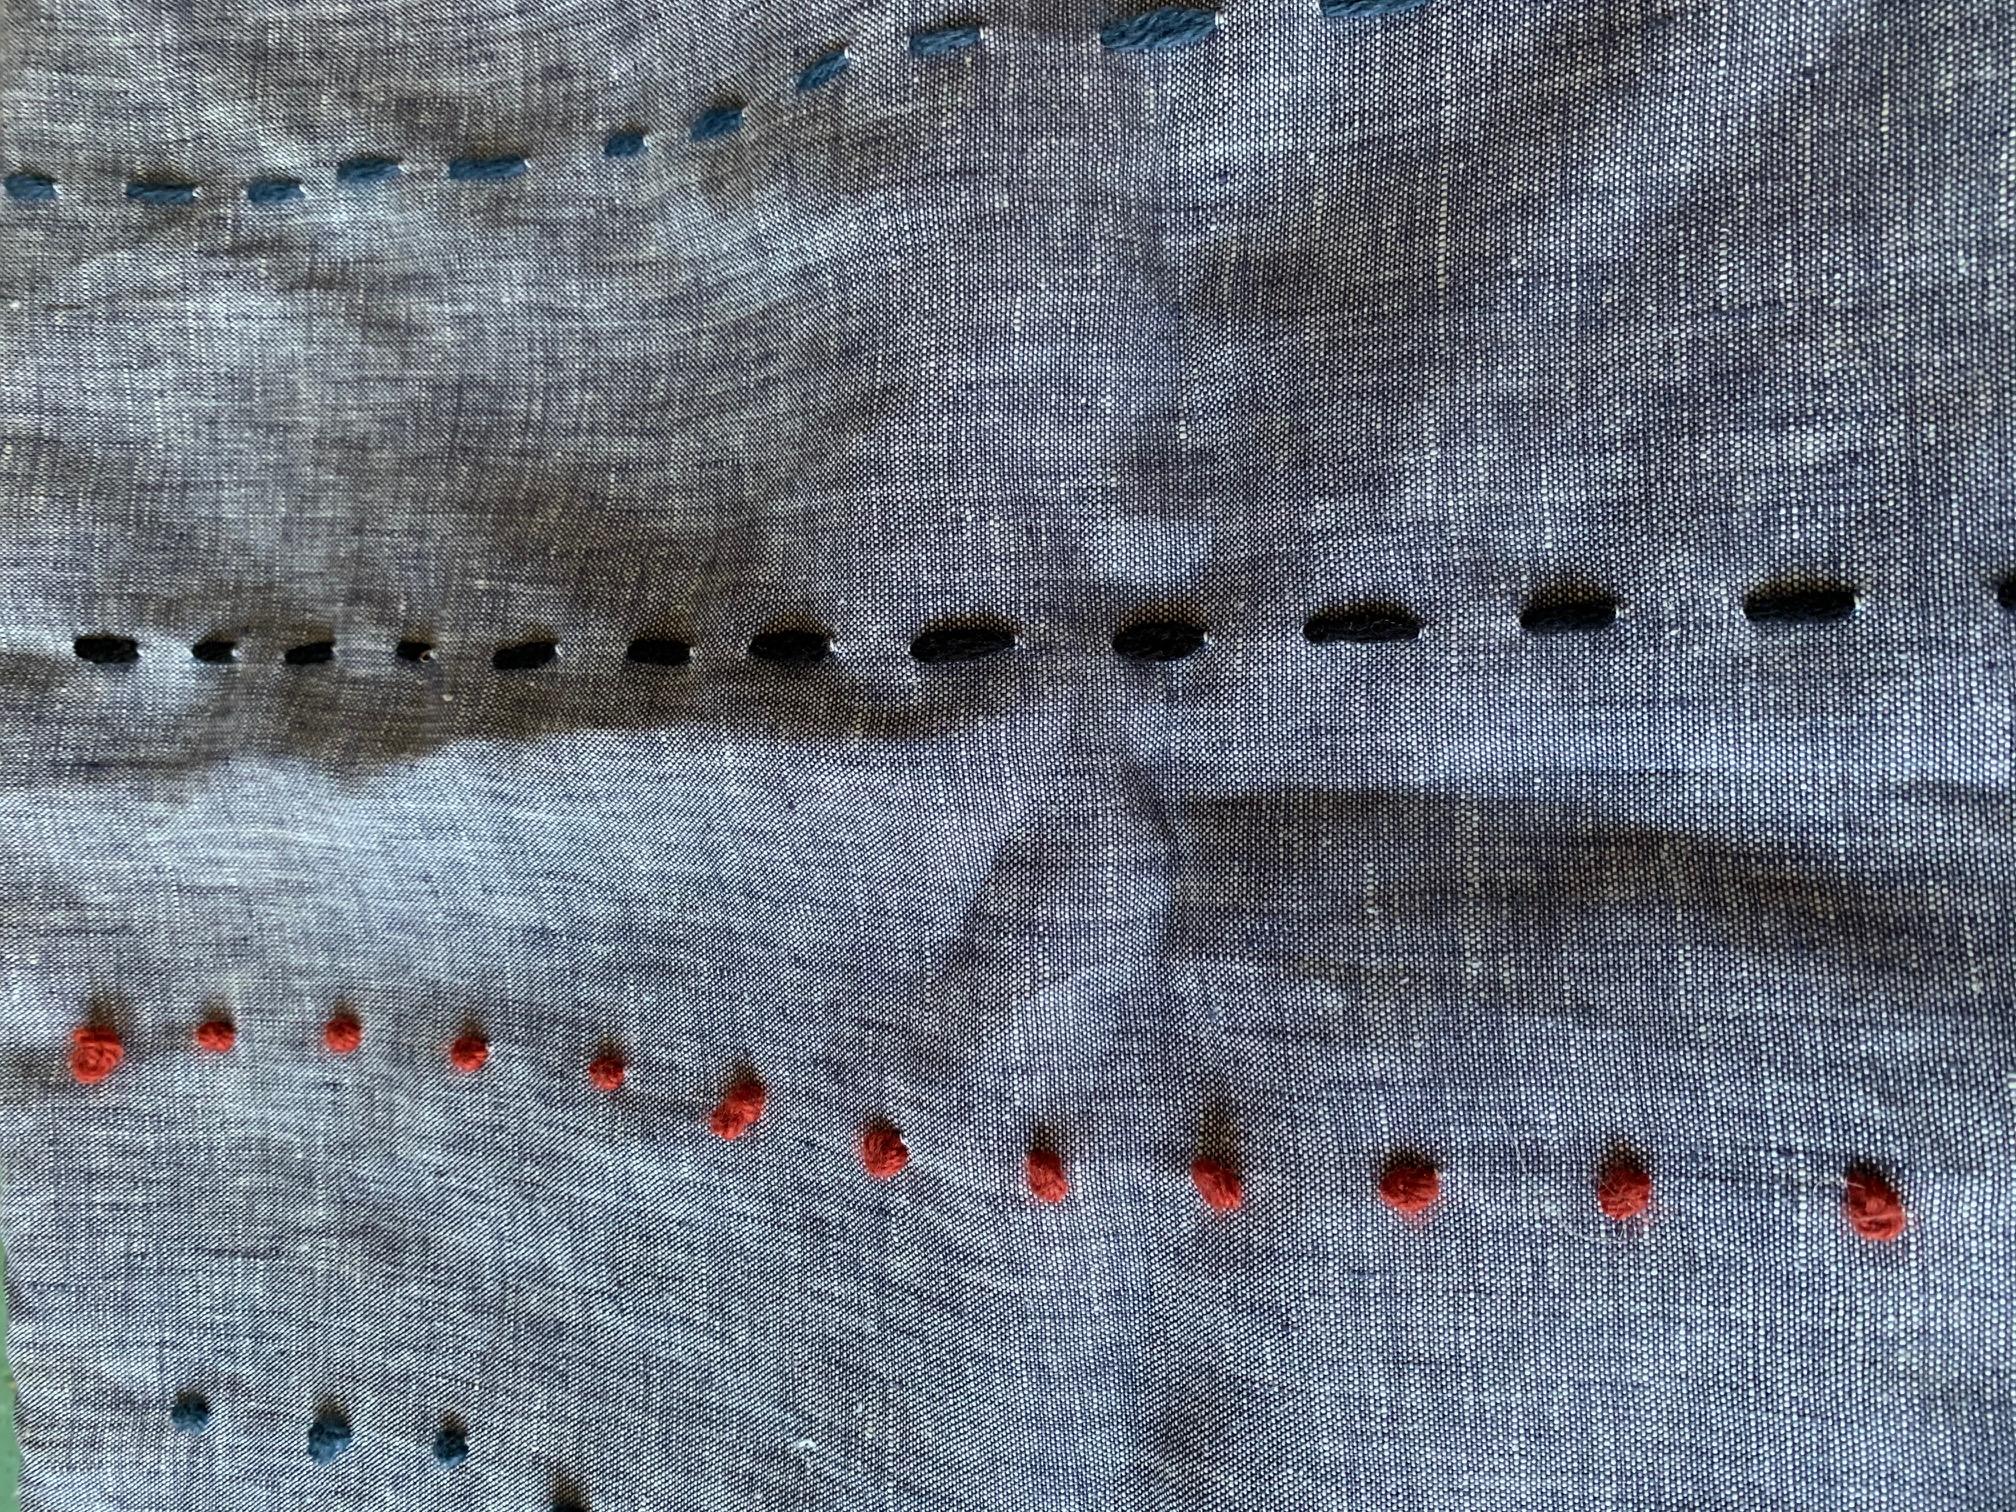 Cette délicate technique à main levée est dérivée de la couture traditionnelle japonaise qui symbolise le mouvement, le flux et la composition organique de la nature.

Insertion de plumes de duvet, fermeture à glissière


Le Maki Yamamoto Textile